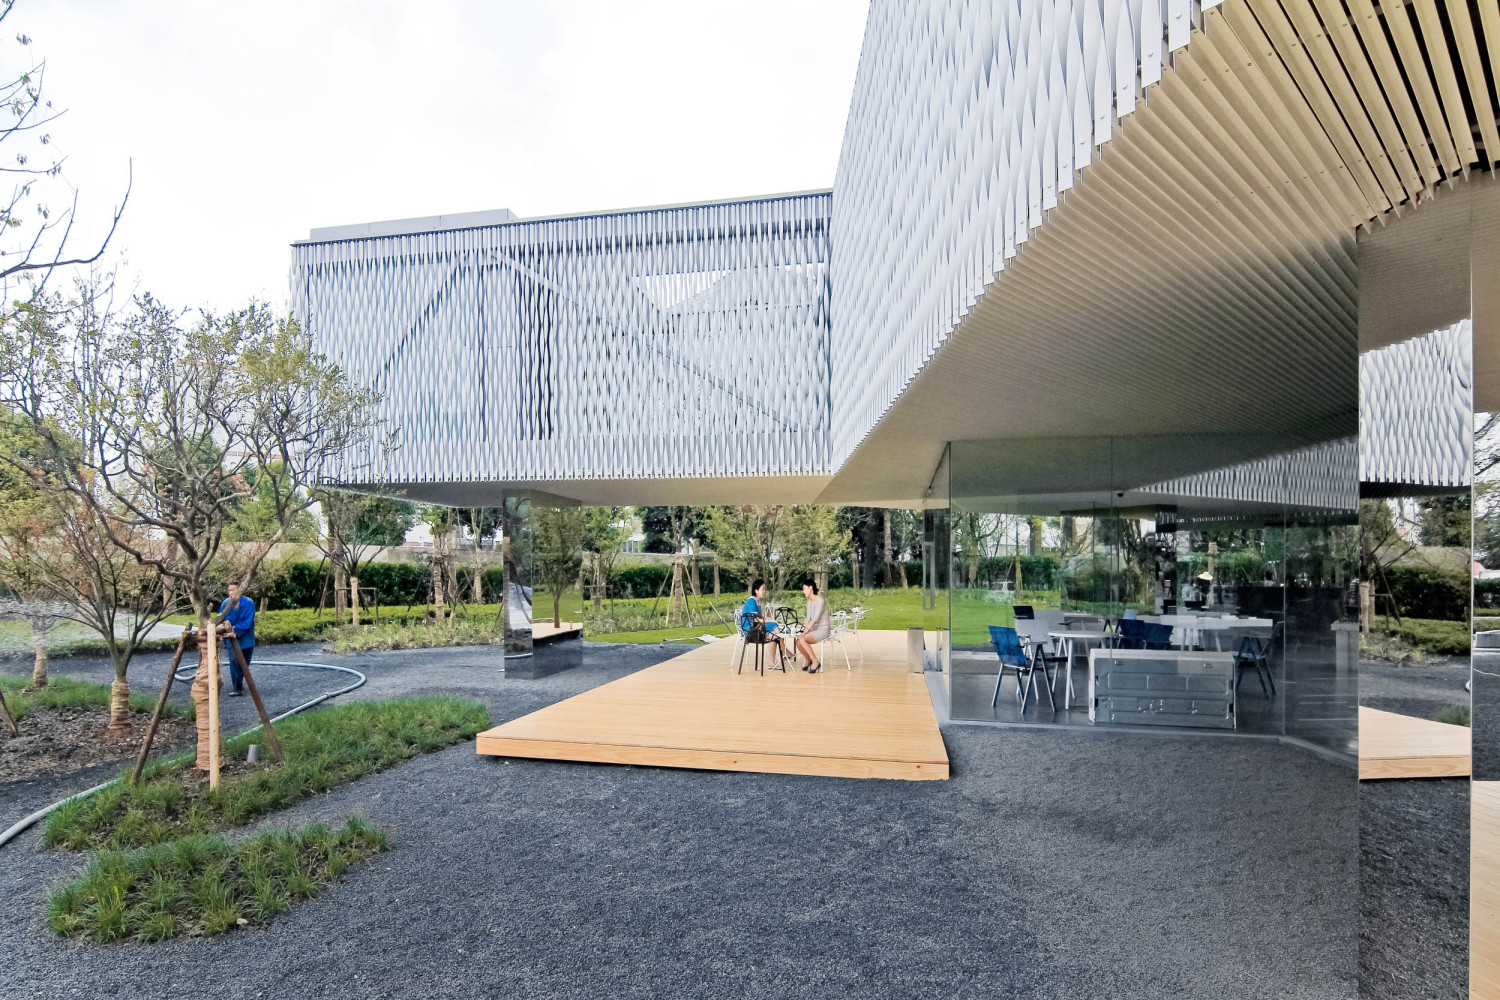 上海谷歌创客活动中心建筑设计 / 山水秀建筑事务所